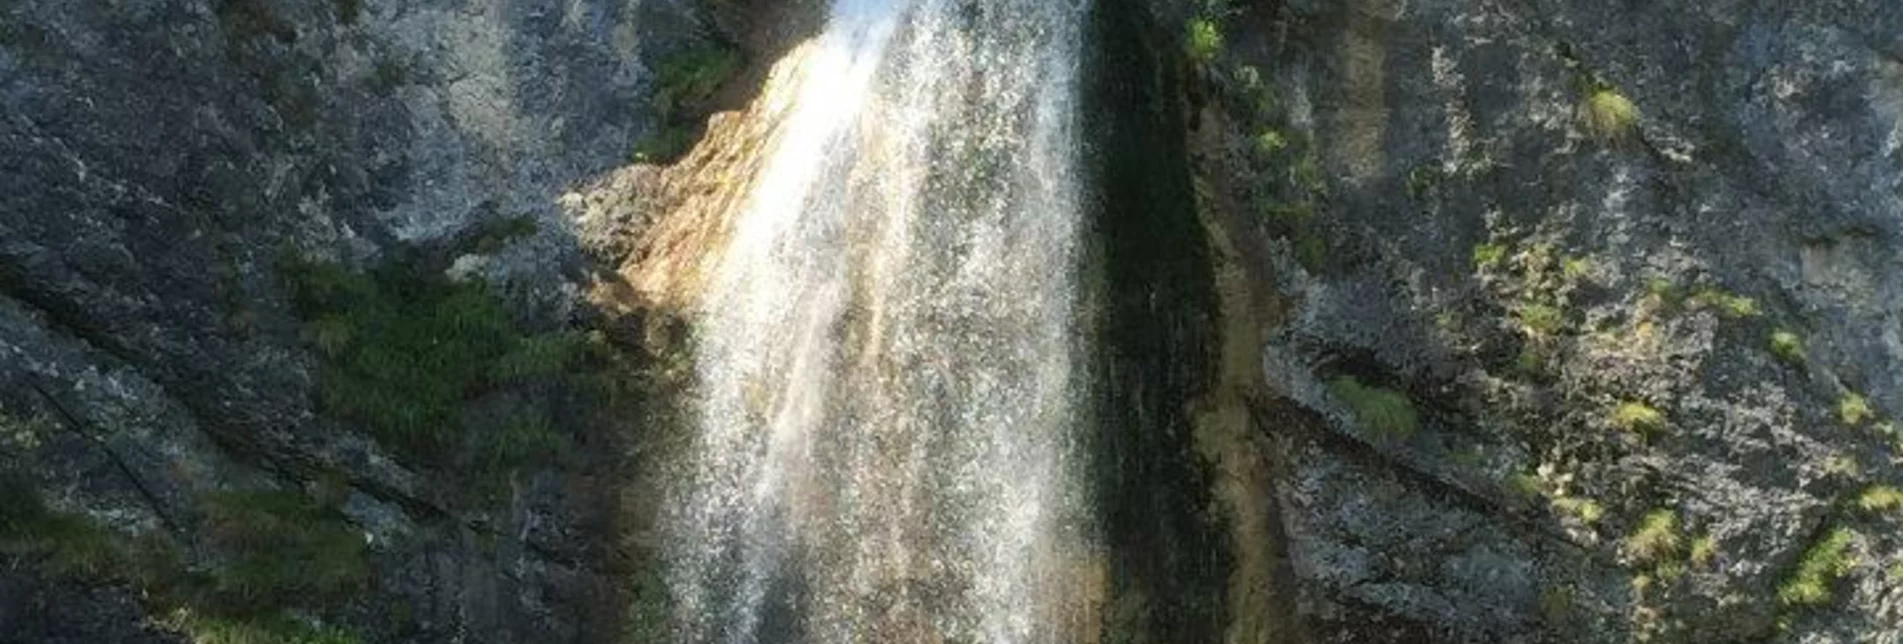 Wanderung Salza Wasserfall - Touren-Impression #1 | © Erlebnisregion Schladming-Dachstein